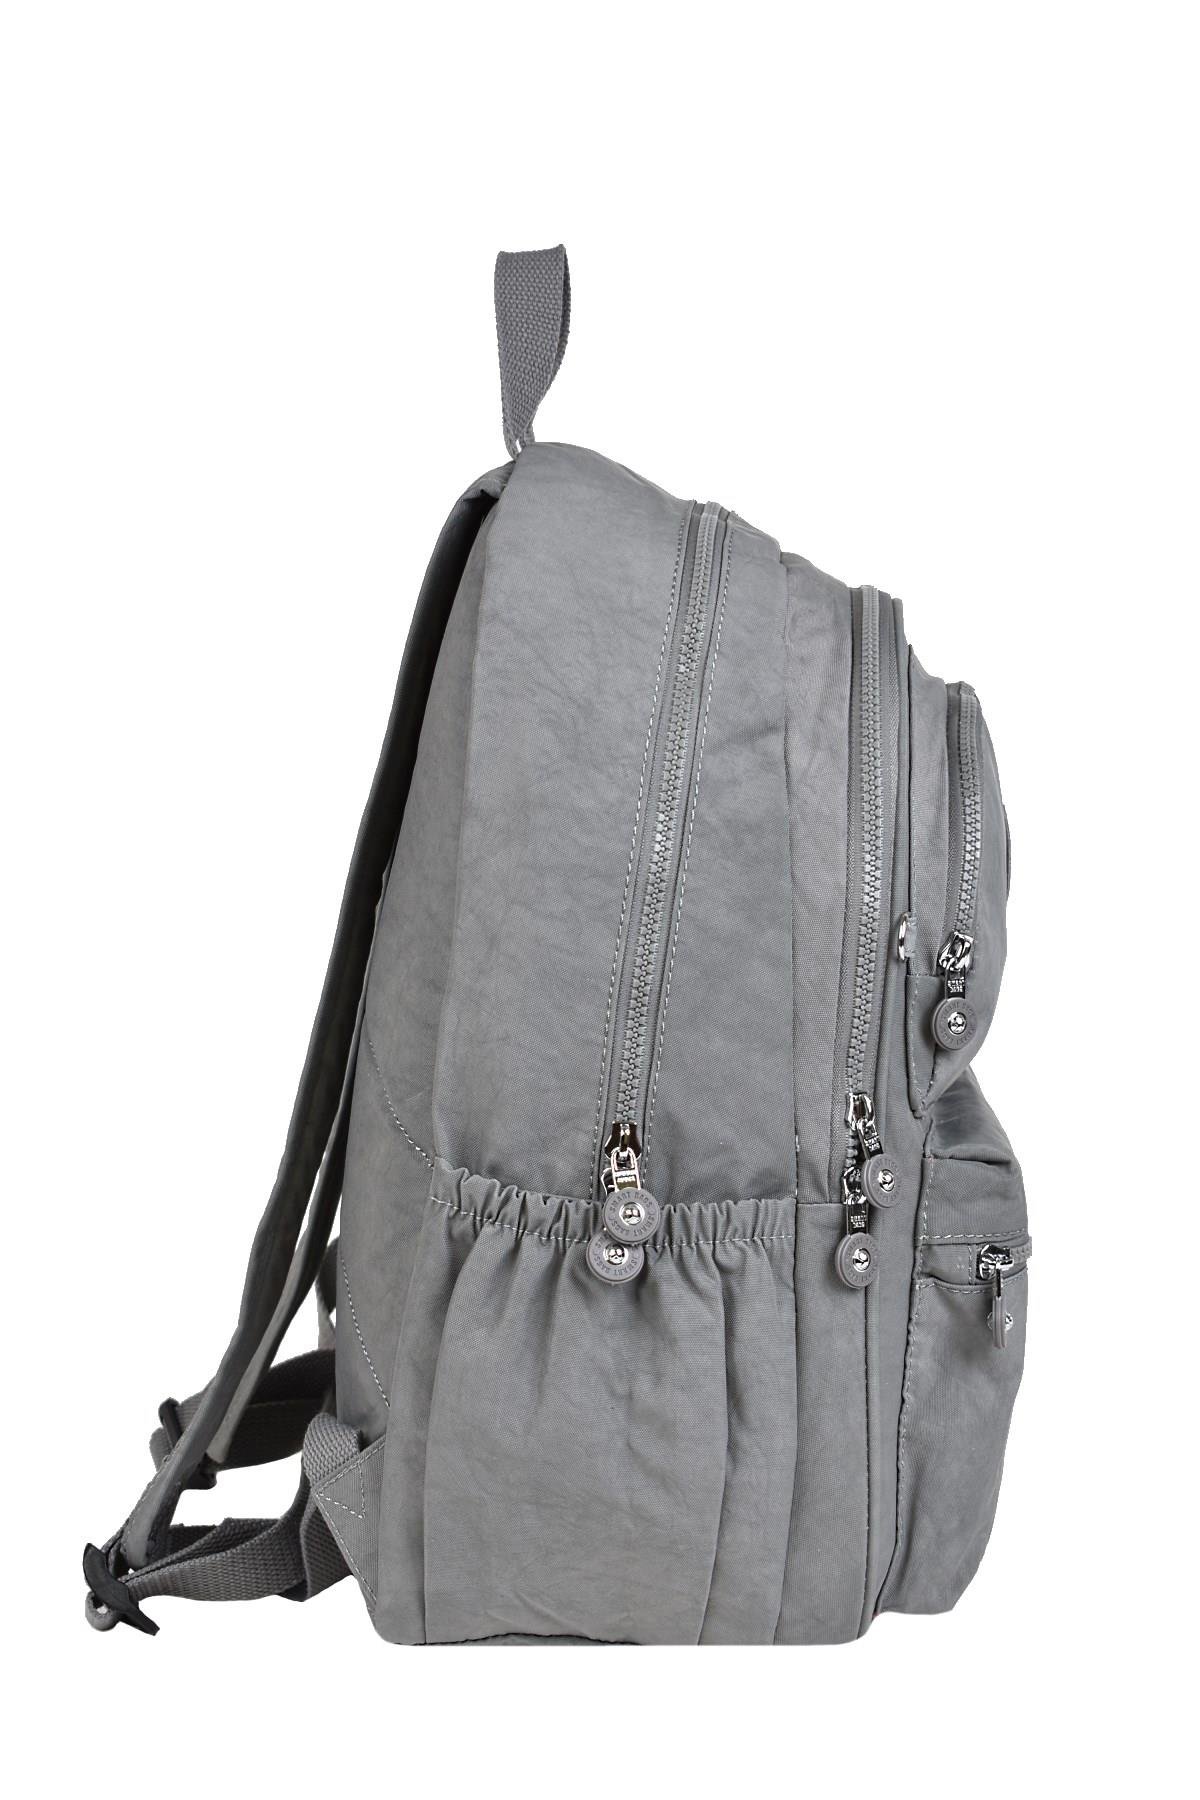 Smart Bags Sırt Çantası Gri 1050 | elatae.com